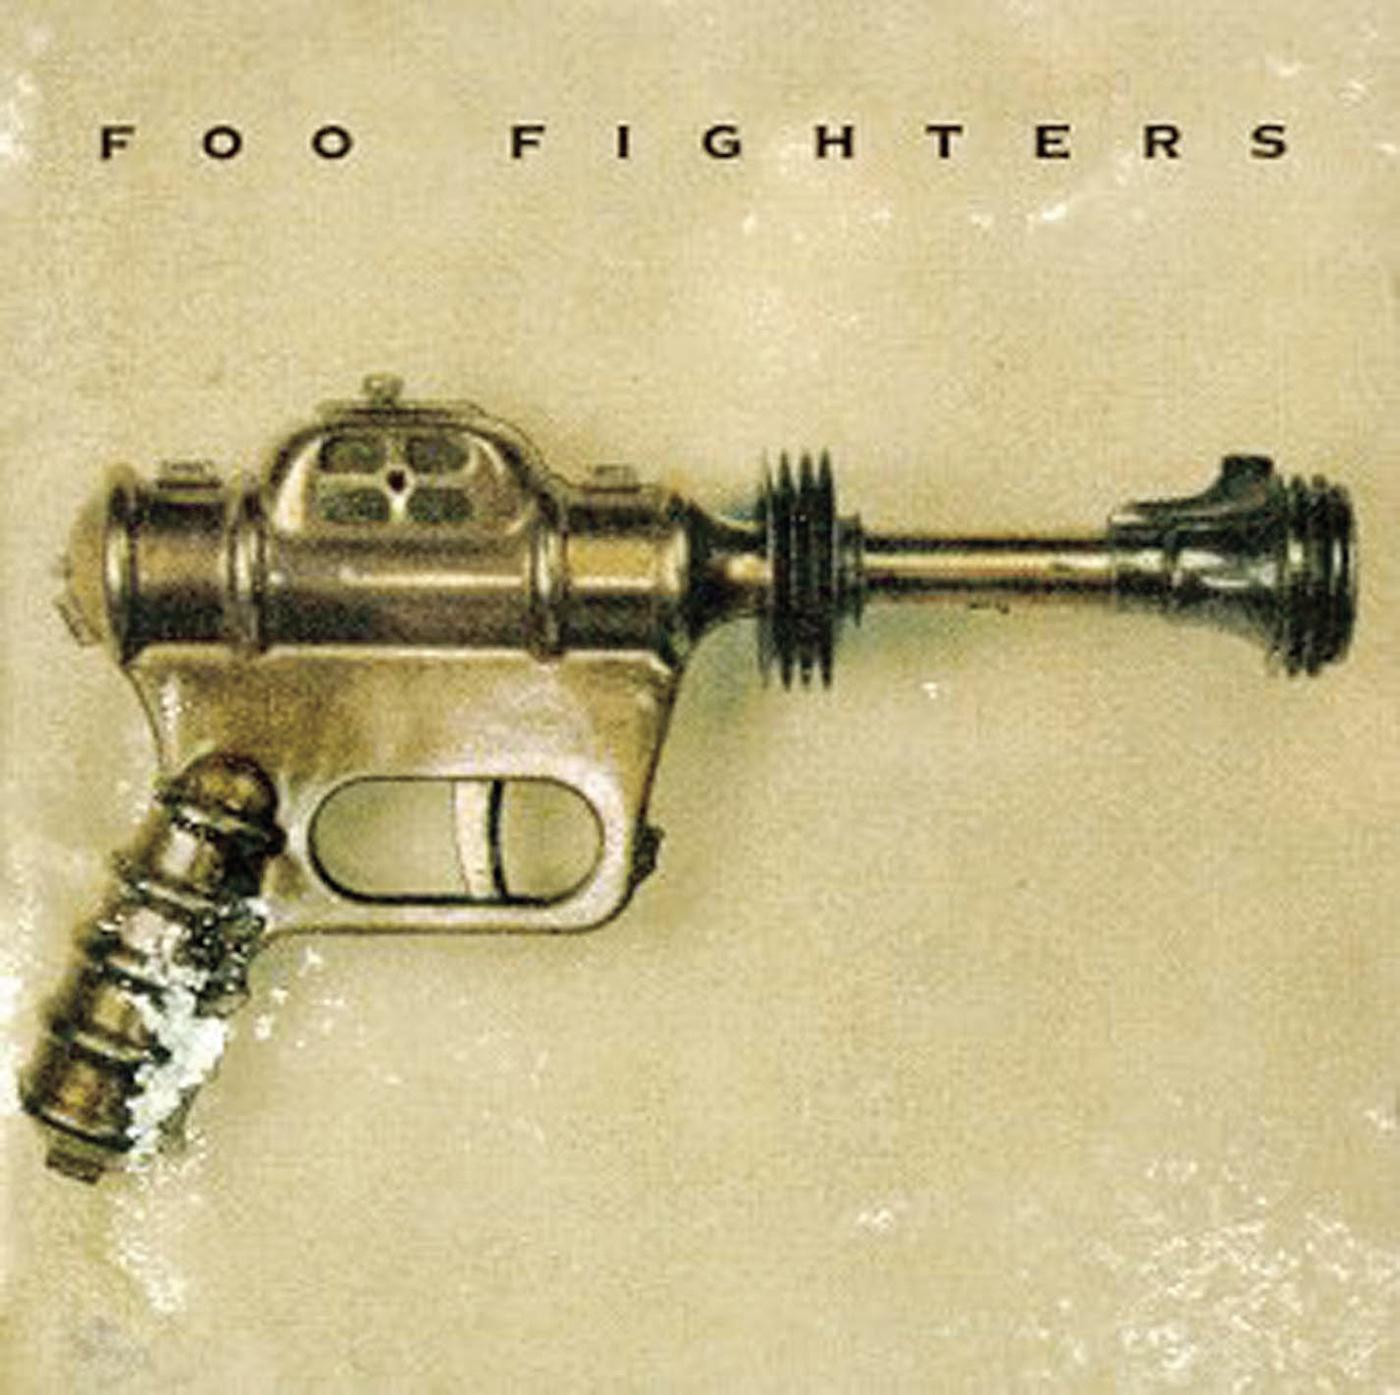 Foo Fighters - Wattershed